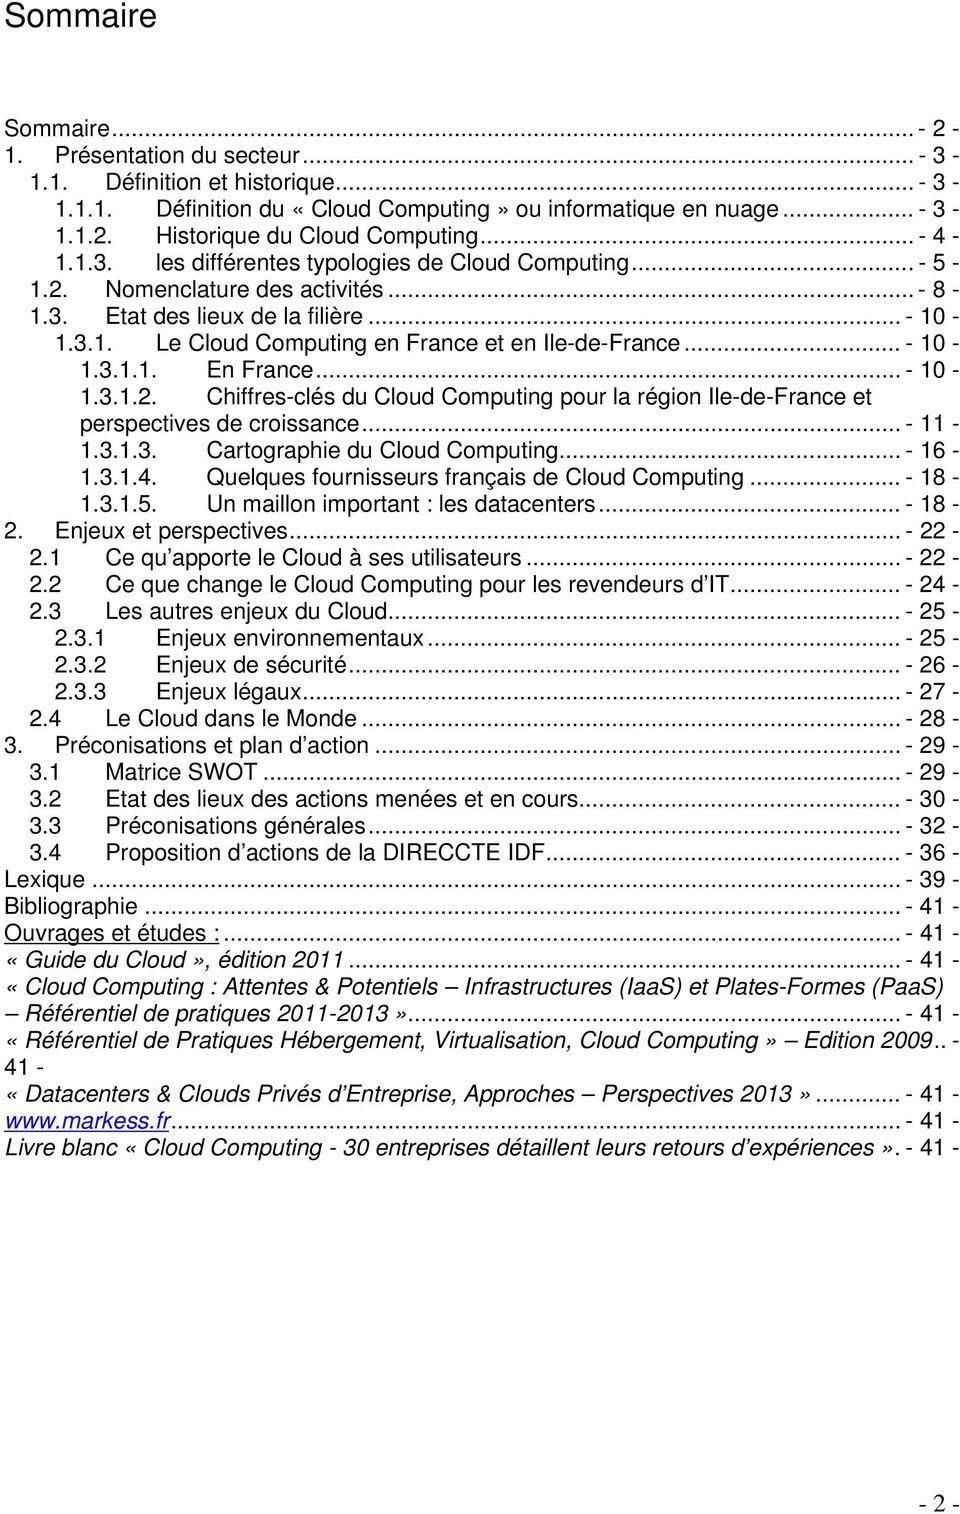 .. - 10-1.3.1.1. En France... - 10-1.3.1.2. Chiffres-clés du Cloud Computing pour la région Ile-de-France et perspectives de croissance... - 11-1.3.1.3. Cartographie du Cloud Computing... - 16-1.3.1.4.